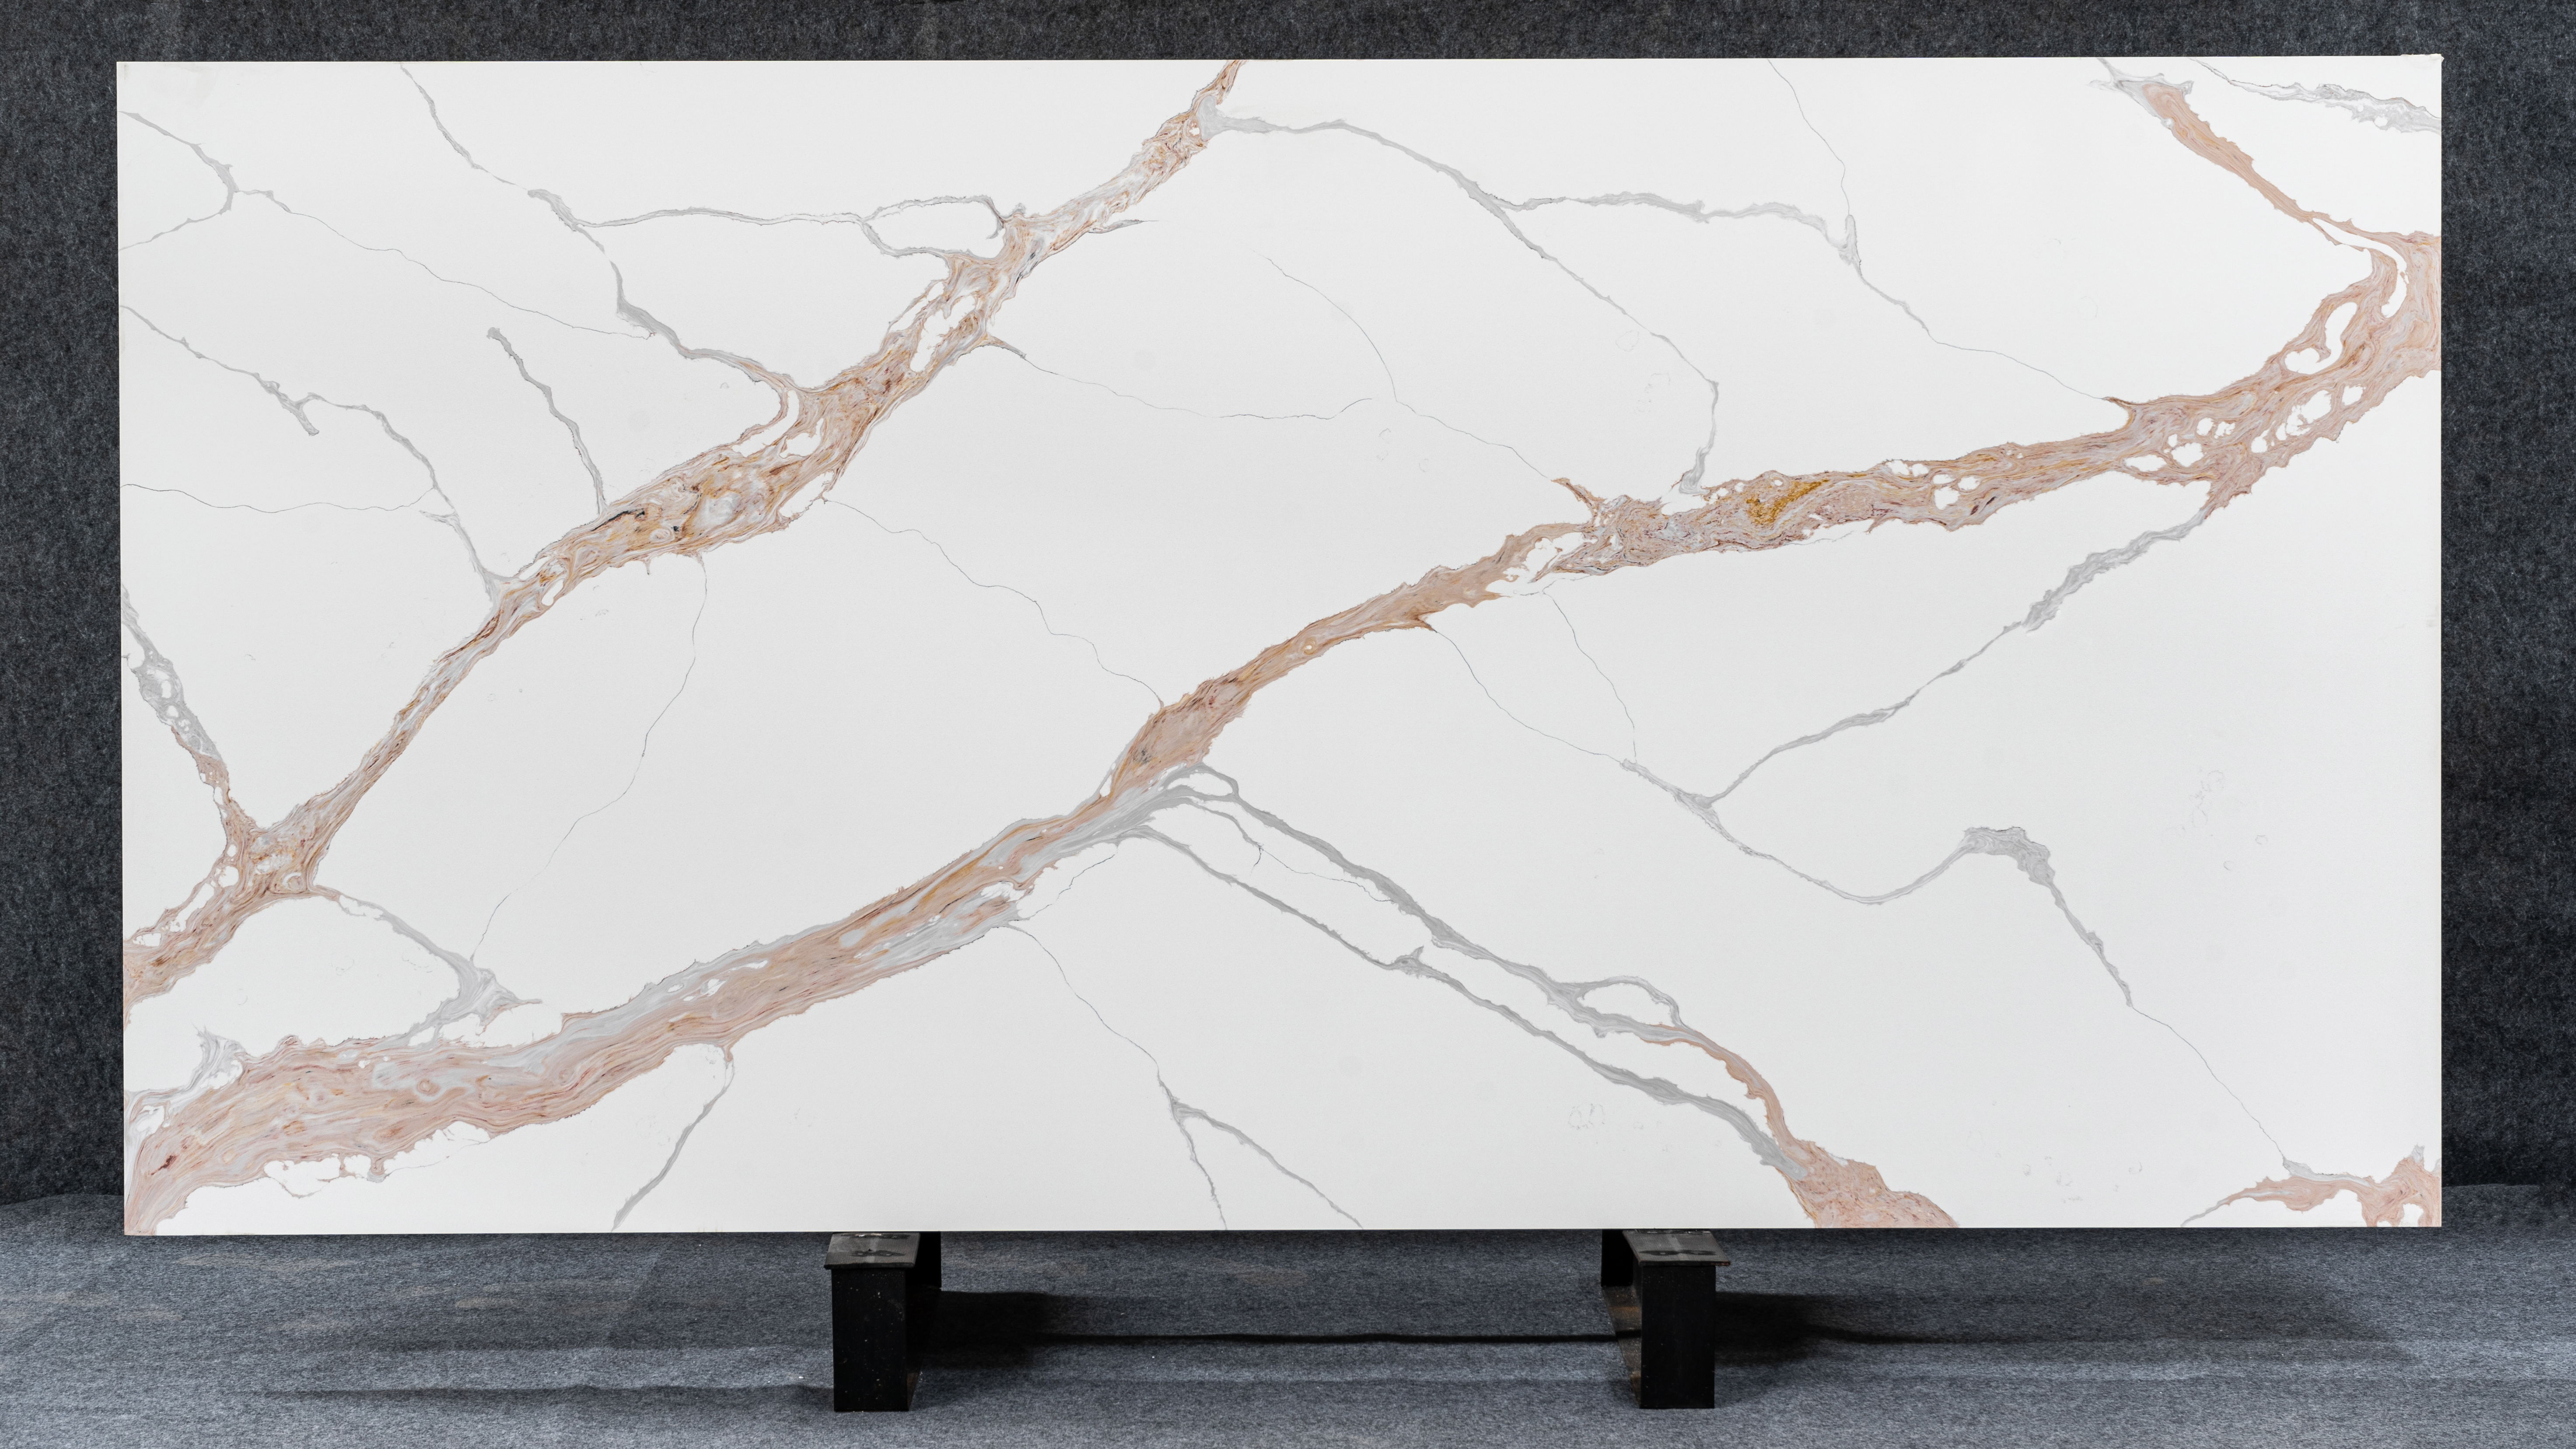  CARACATA white quartz slate untuk perabot rumah tangga berkualitas tinggi 